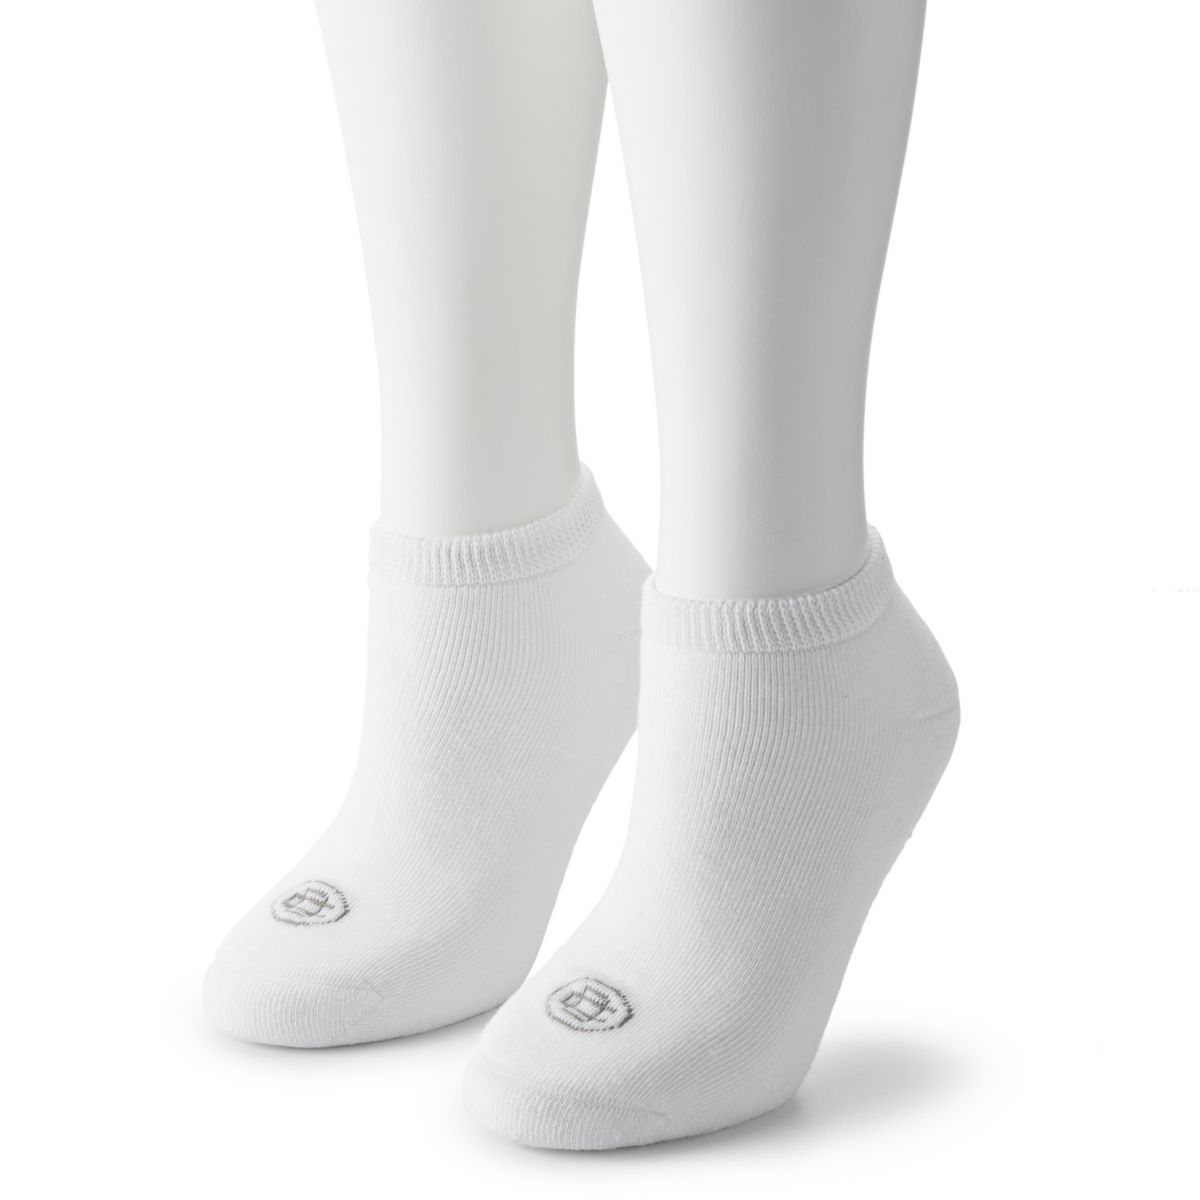 Женские носки для диабетиков Doctors Choice из 2 пар. Dr. Choice